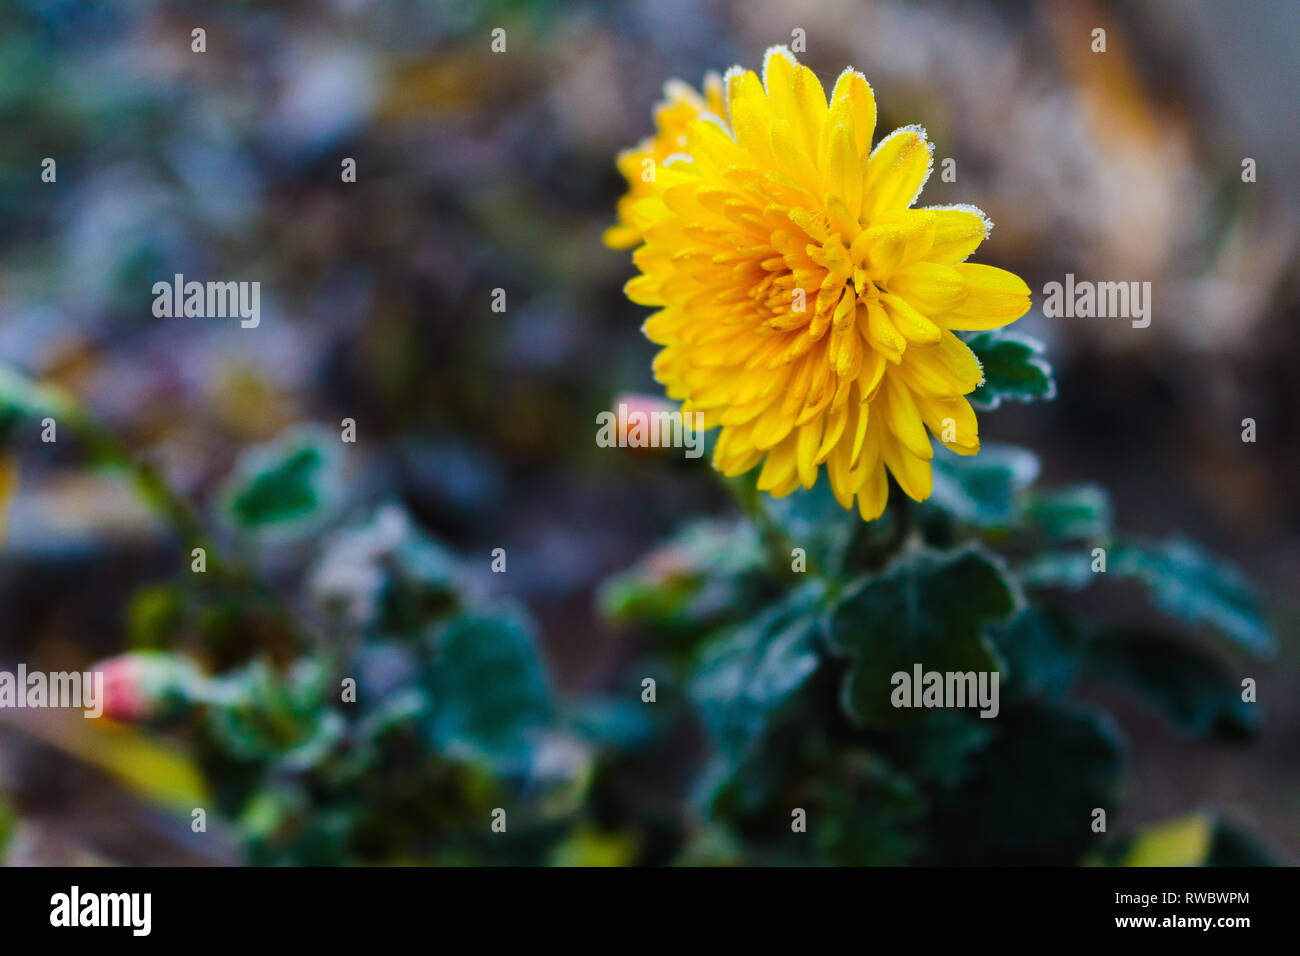 Fleur jaune chrysanthème gelé. Fleur de chrysanthème avec bourgeons gelés sur fond vert. Chrysanthème inflorenscence de Krivoï Rog, Ukraine Banque D'Images